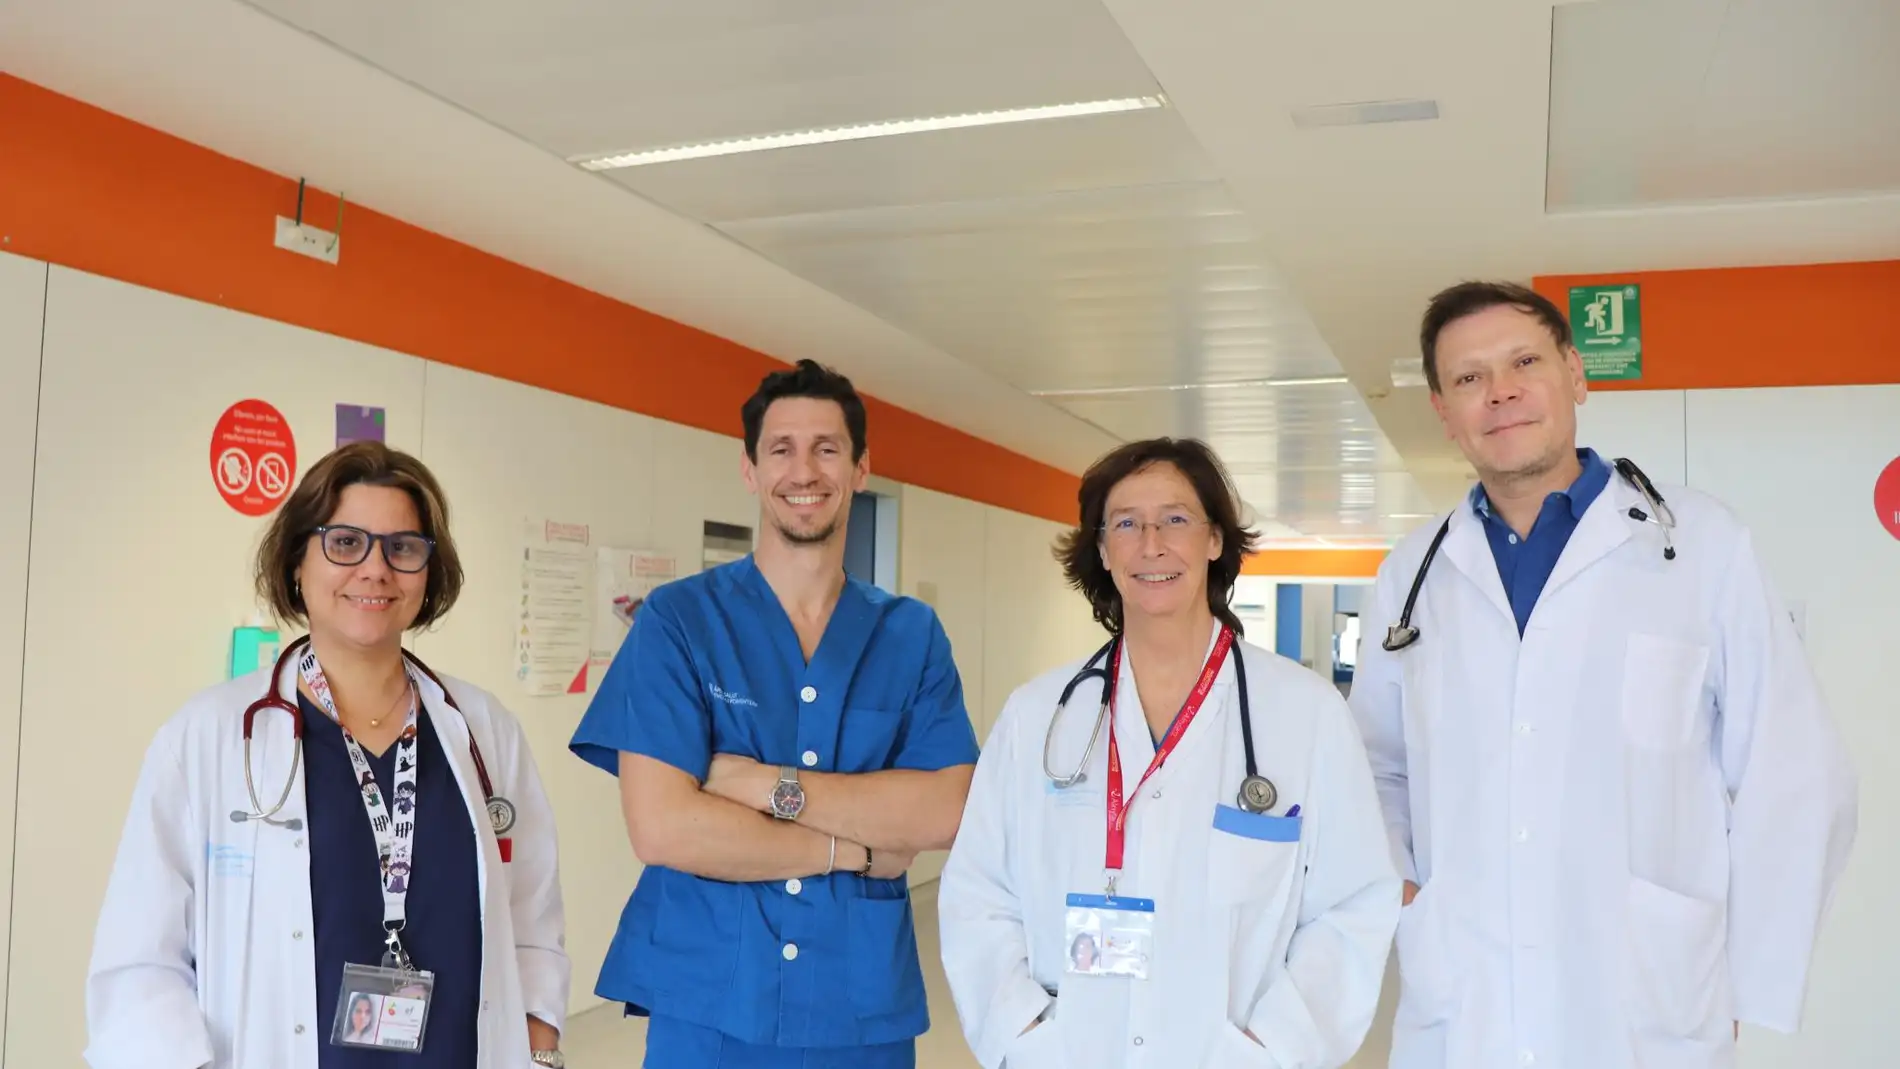 De izquierda a derecha, la Marlenis Pérez, Gianfranco Martinis, la responsable del servicio de Cardiología Magdalena Memoli y uno de los recientes fichajes, Sergio E. Veloso.